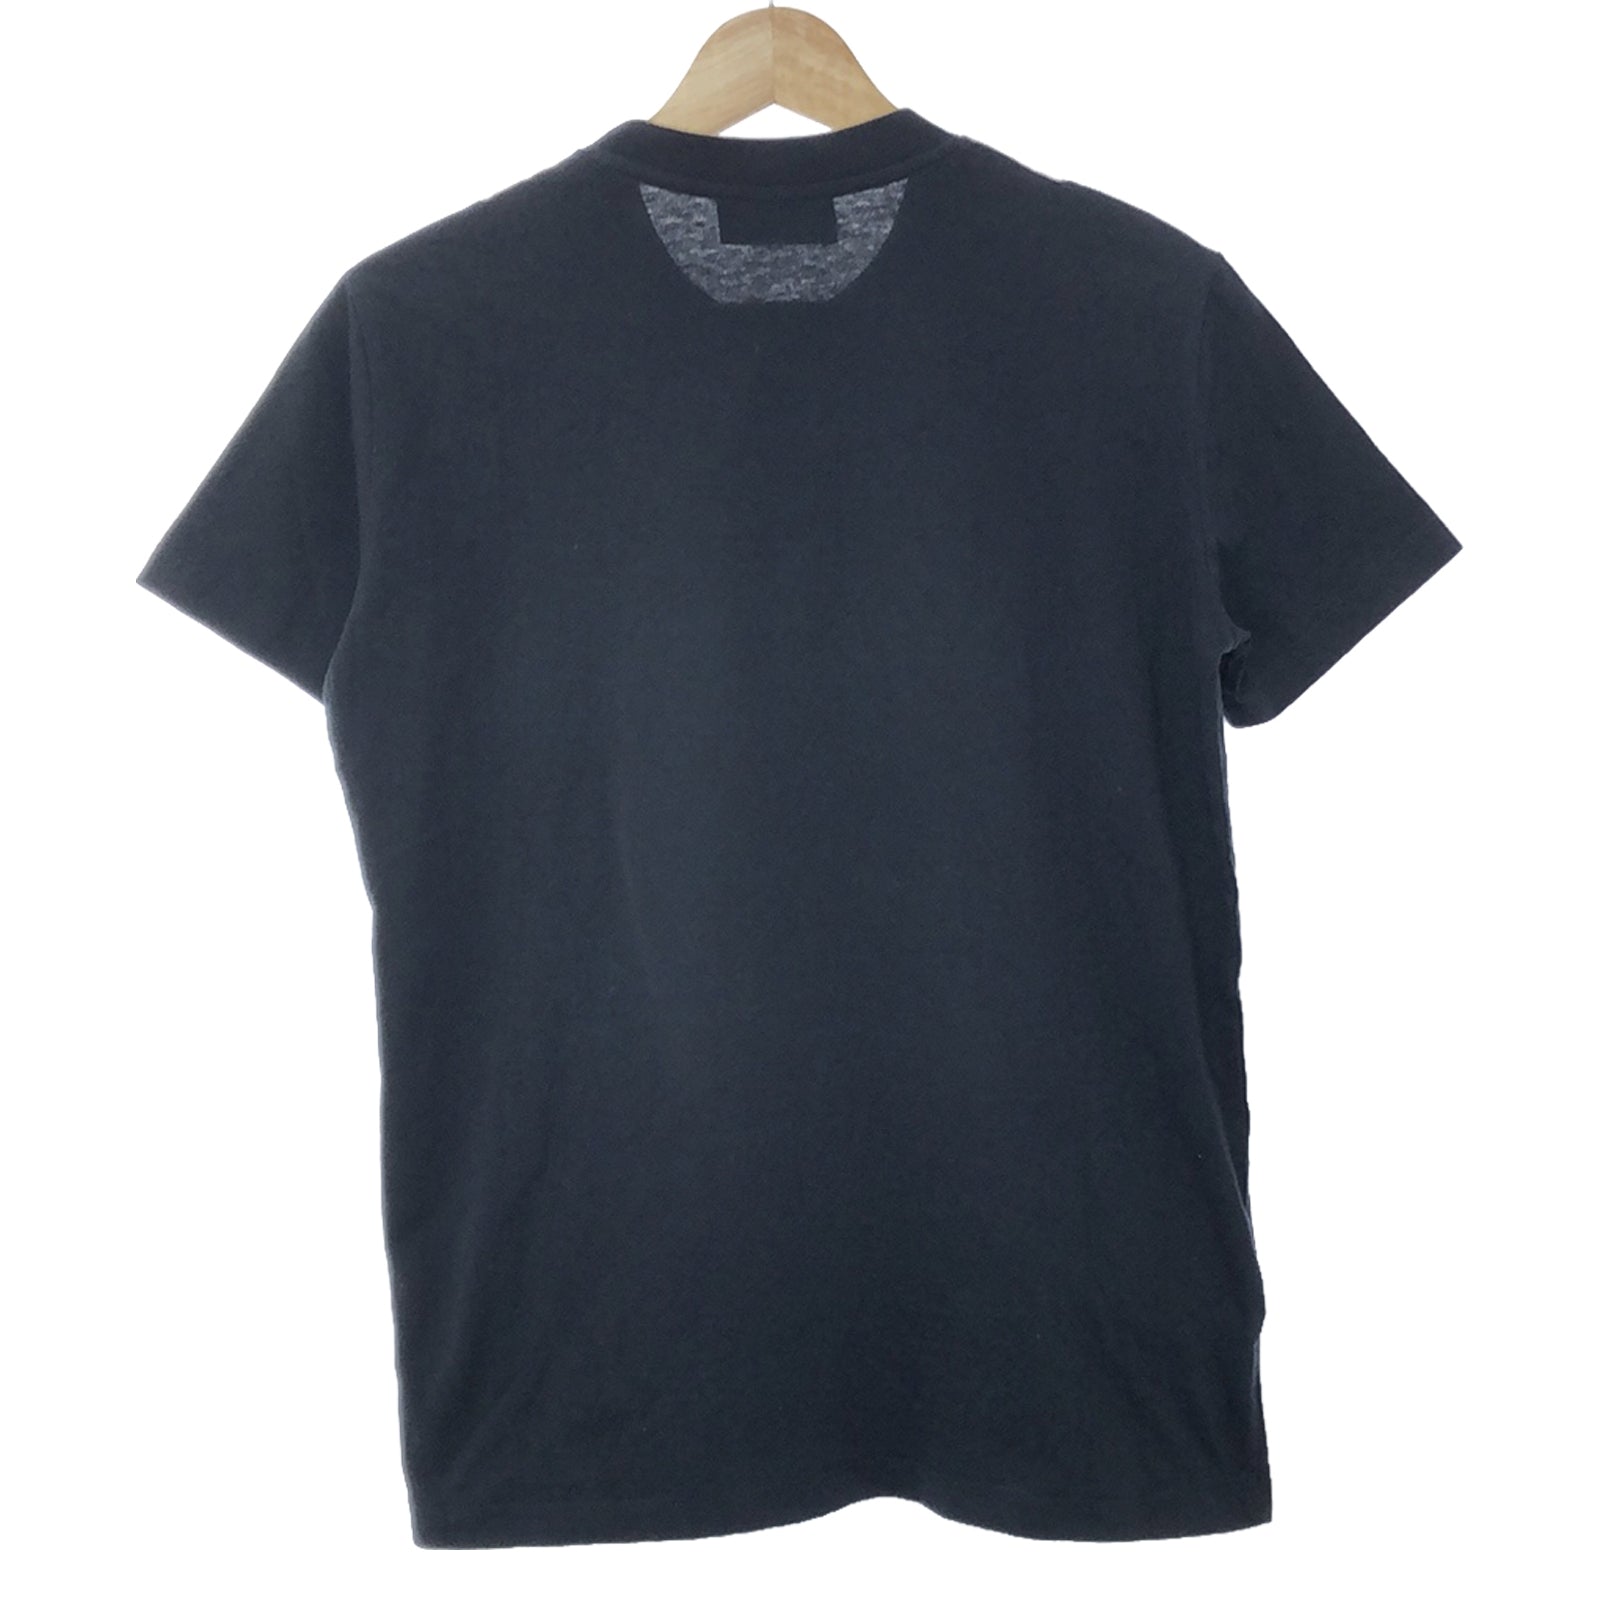 Prada Prada T-shirt T-shirt T-shirt T-shirt T-shirt T-shirt T-shirt T-shirt T-shirt T-shirt T-shirt T-shirt T-shirt T-shirt T-shirt